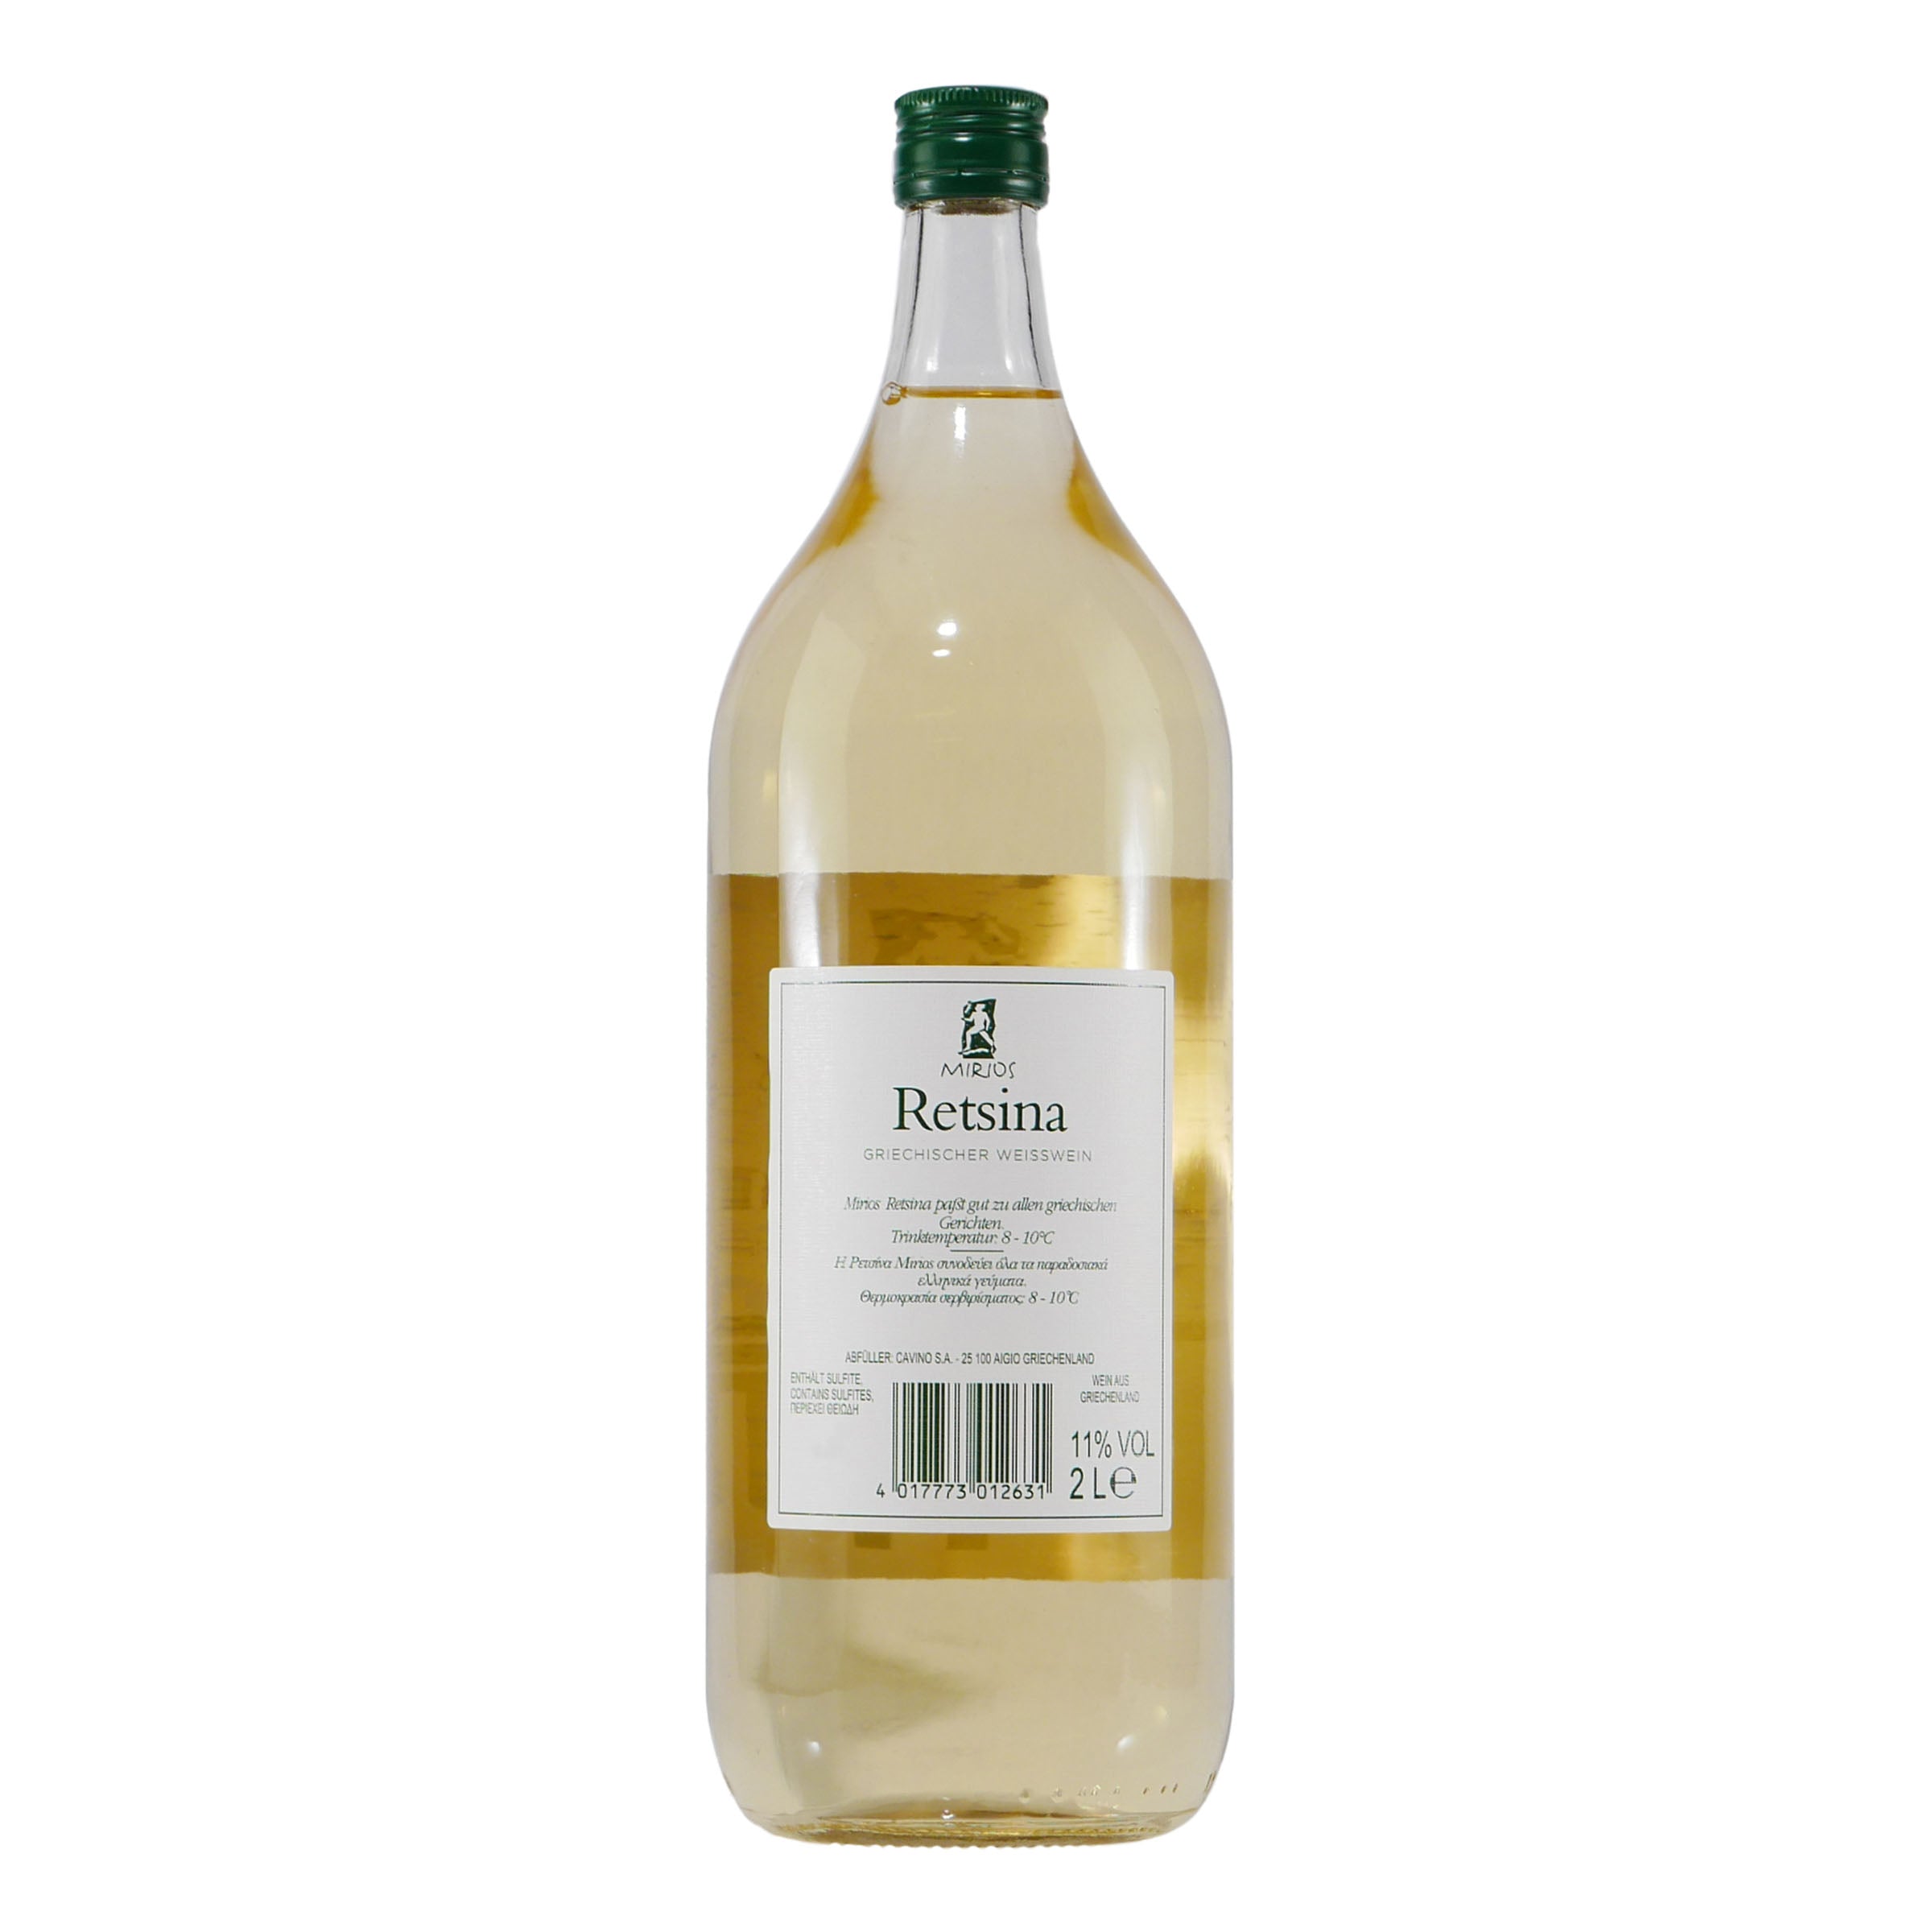 & Wein Gute-Freunde aus Shop ausgewählten | - Retsina Mirios 2,0L Rebsorten Traditioneller Getränke Online griechischer Weißwein Spirituosen